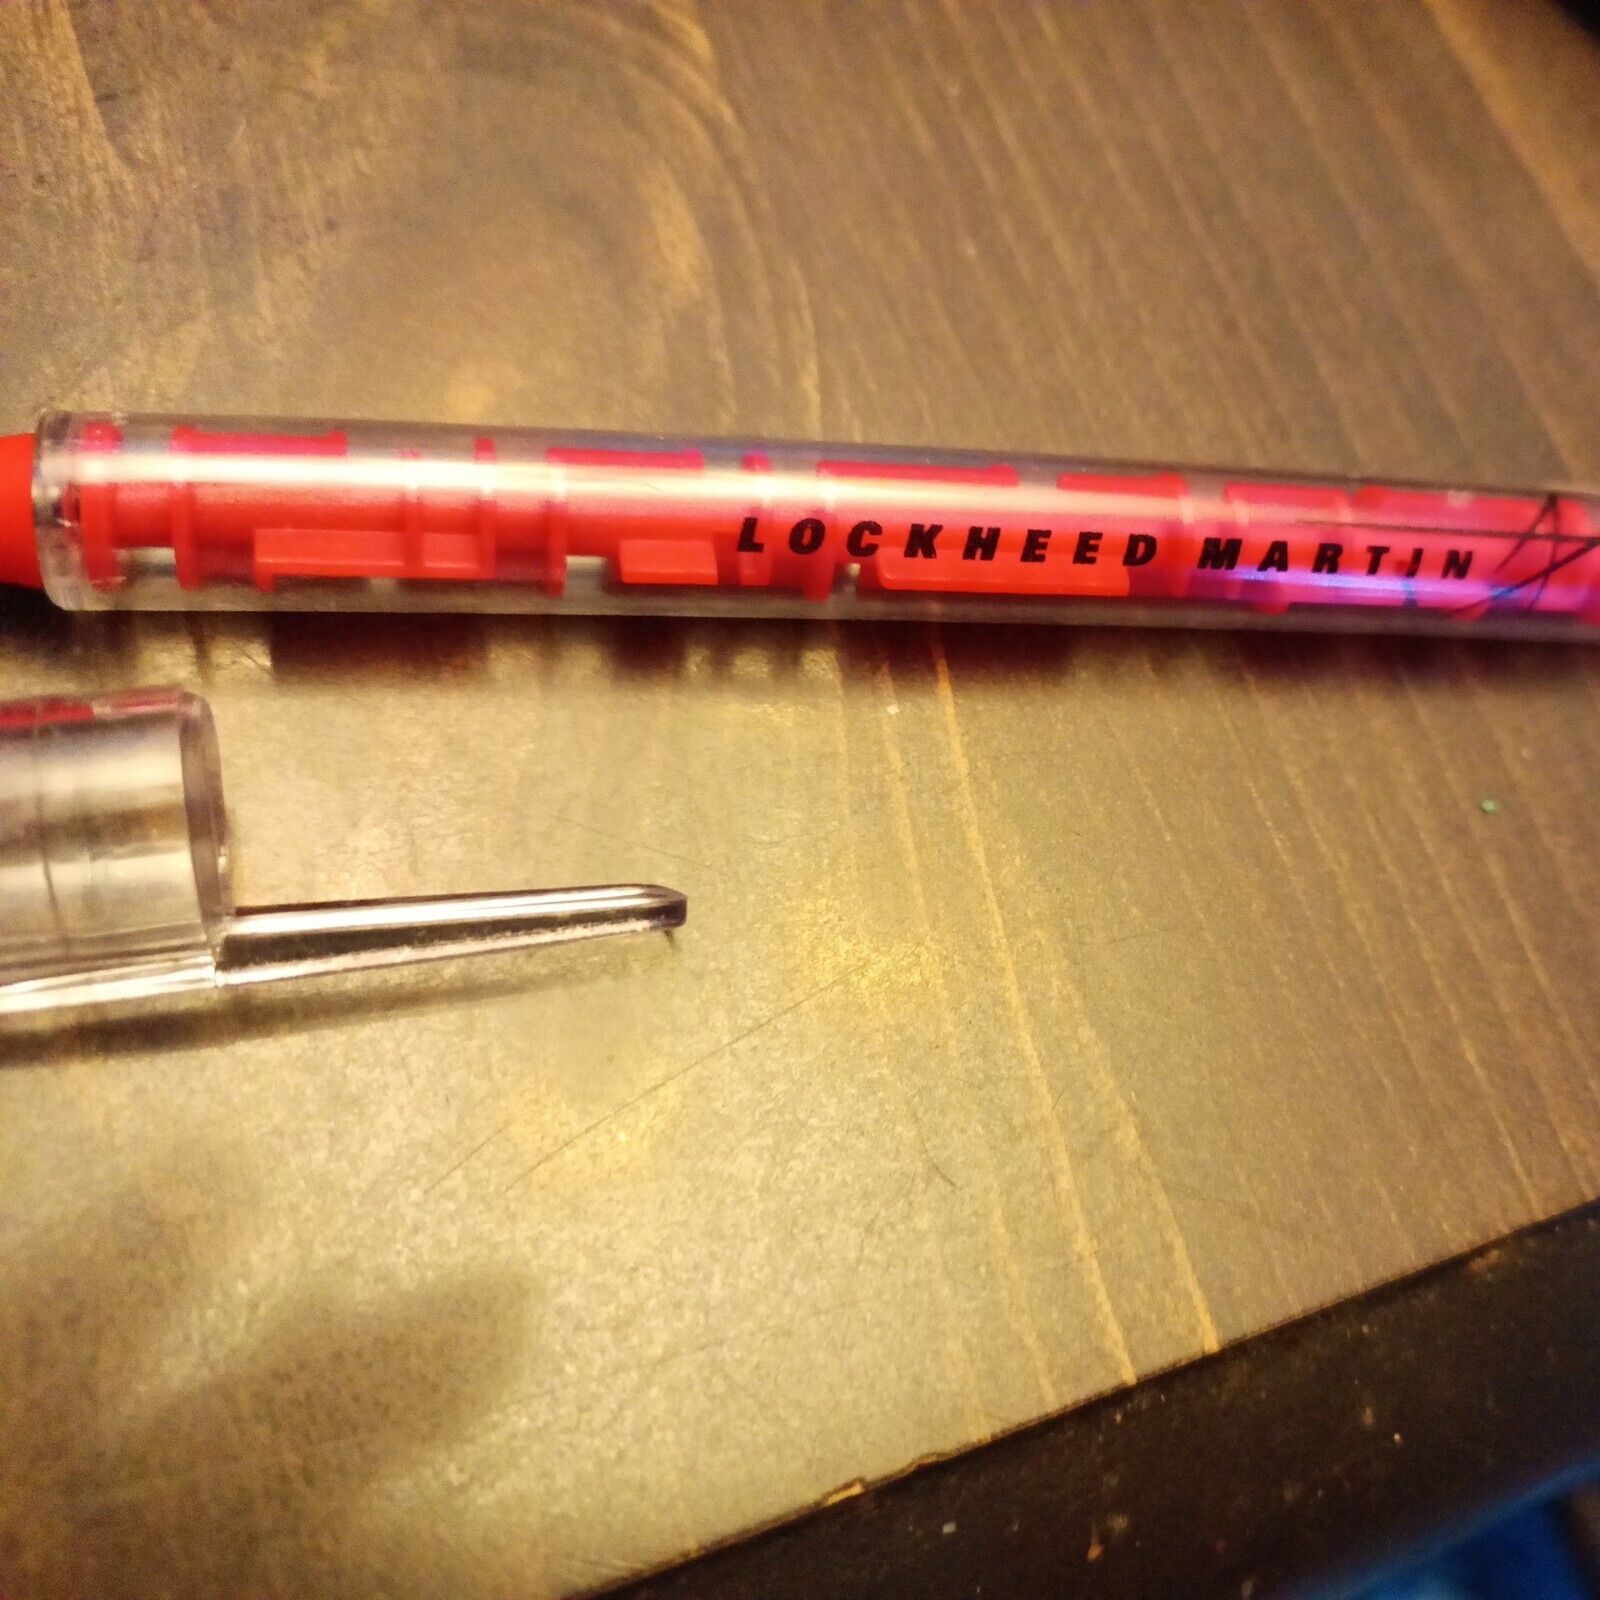 Vintage Lockheed Martin Pen Unusual Red. Needs ink